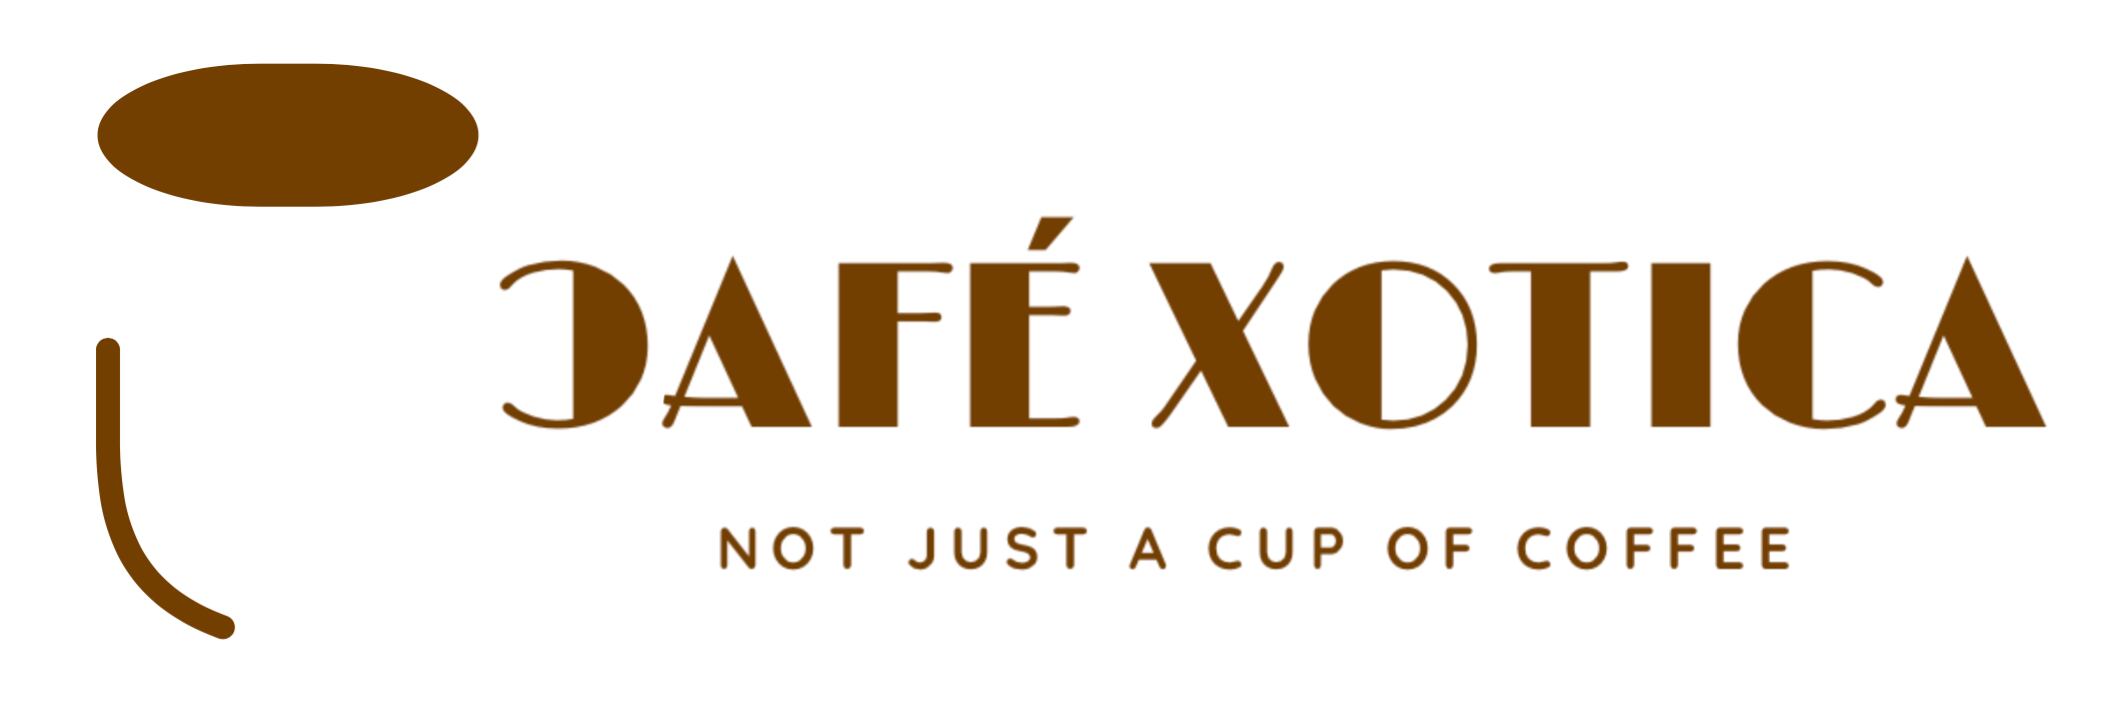 CafeXotica